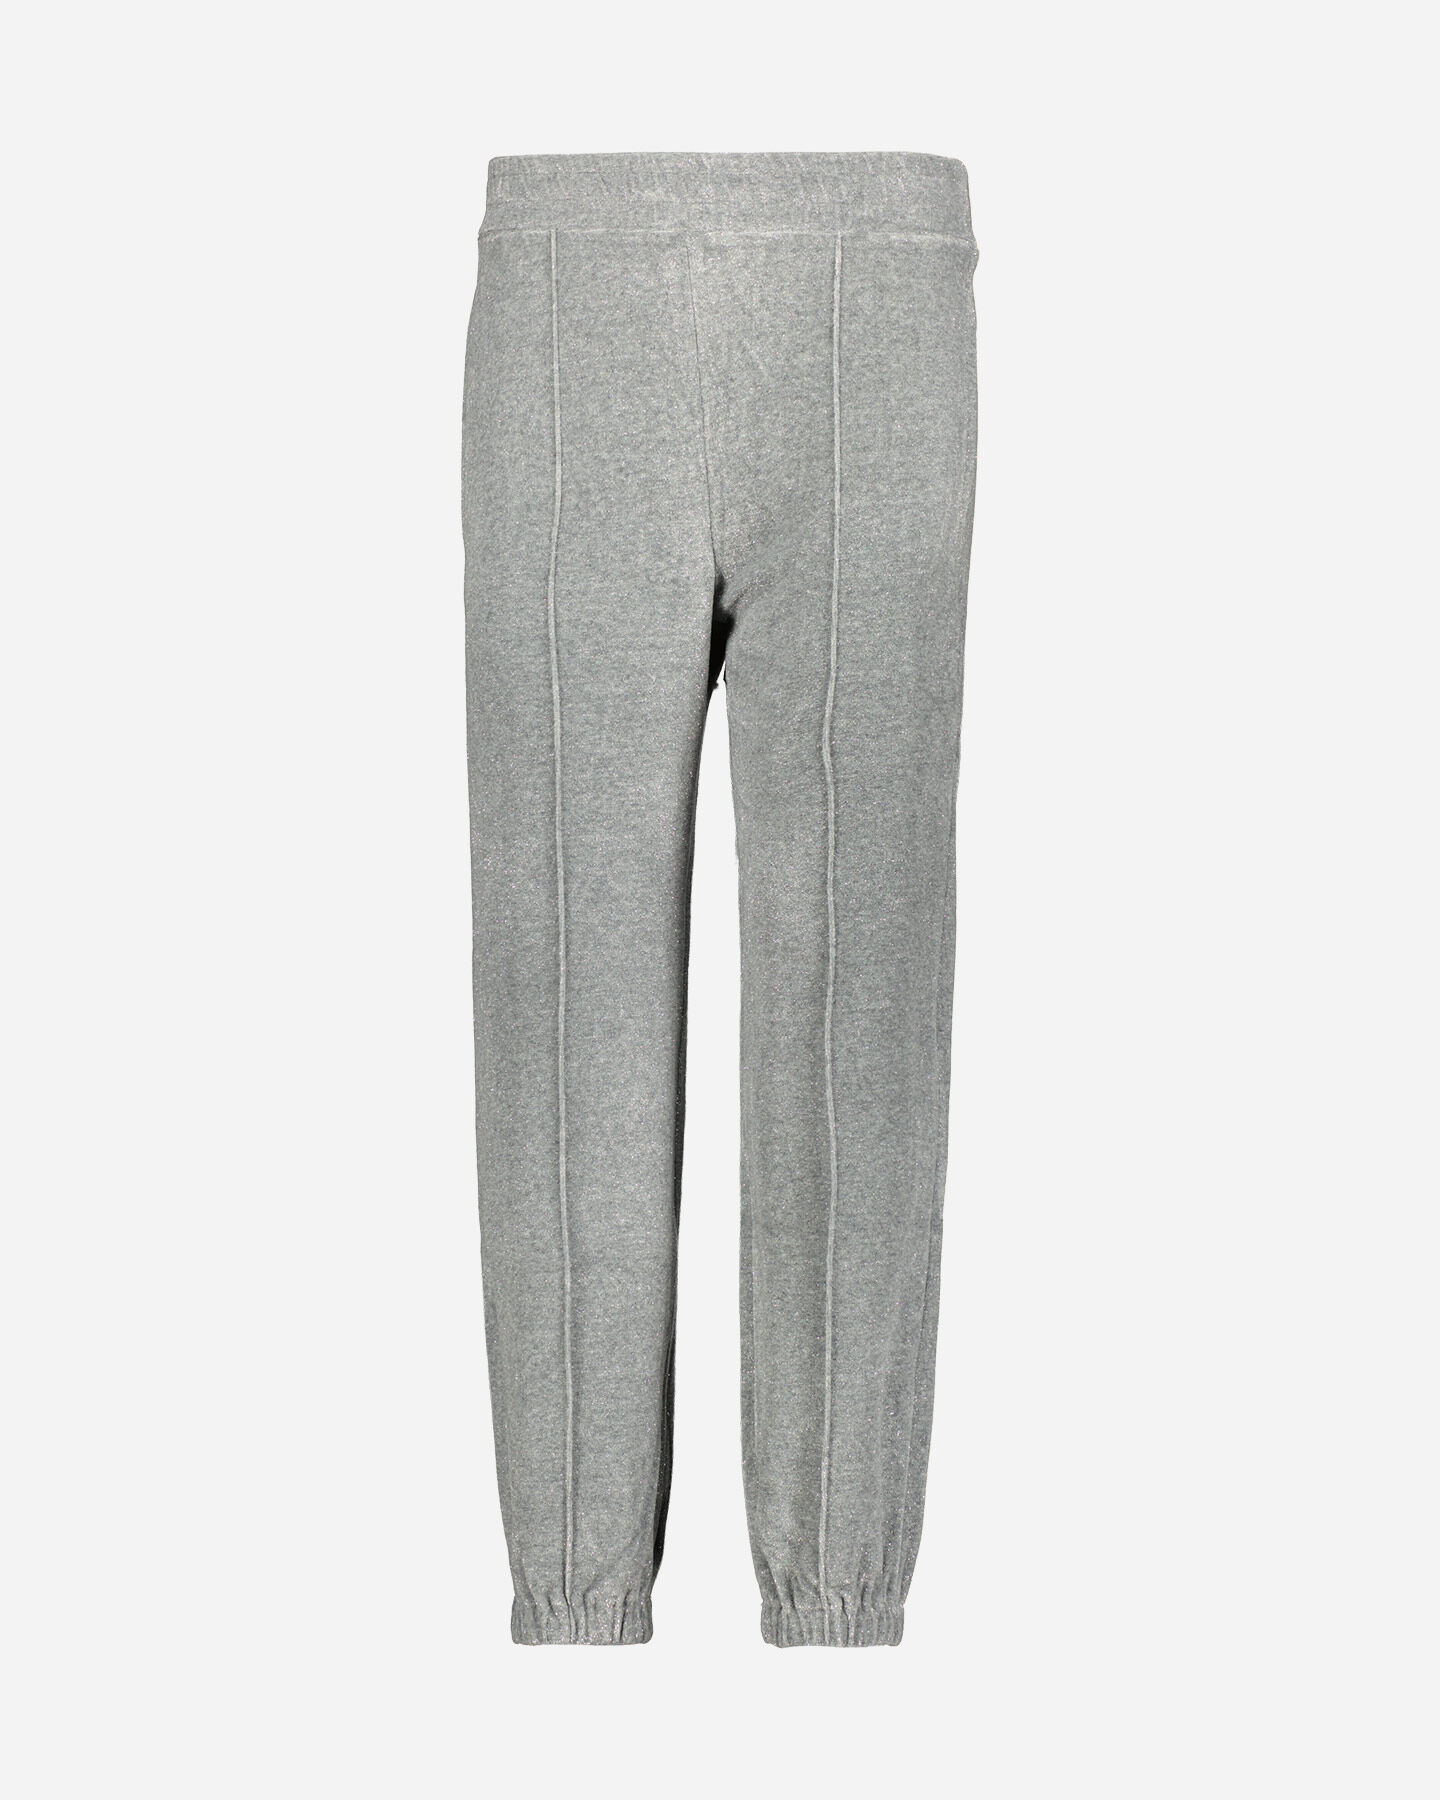  Pantalone DEHA CHENILLE ELASTIC LUREX W S4114475|53805|L scatto 0